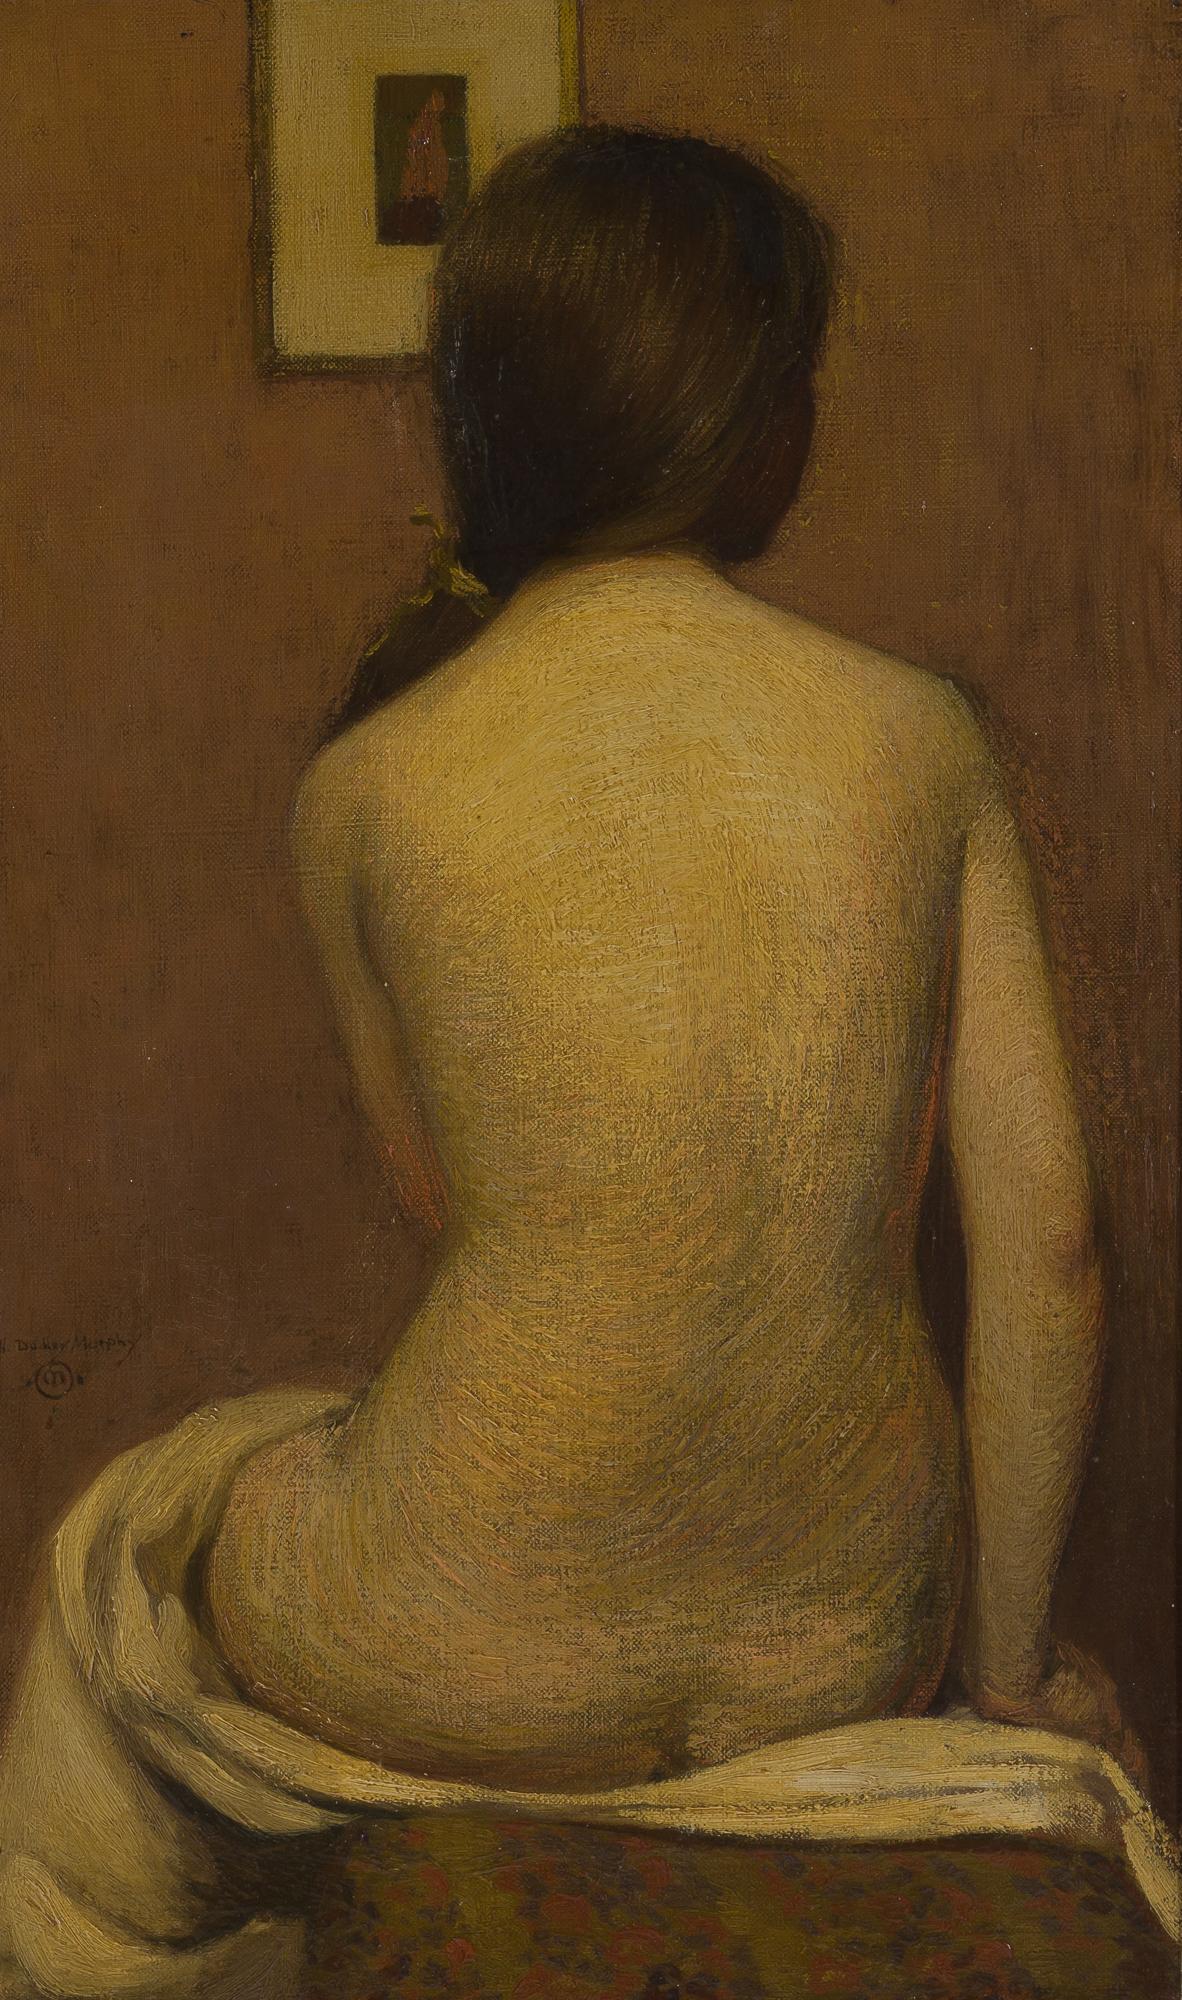 Figurative Painting Hermann Dudley Murphy - [Femme nue vue de derrière]